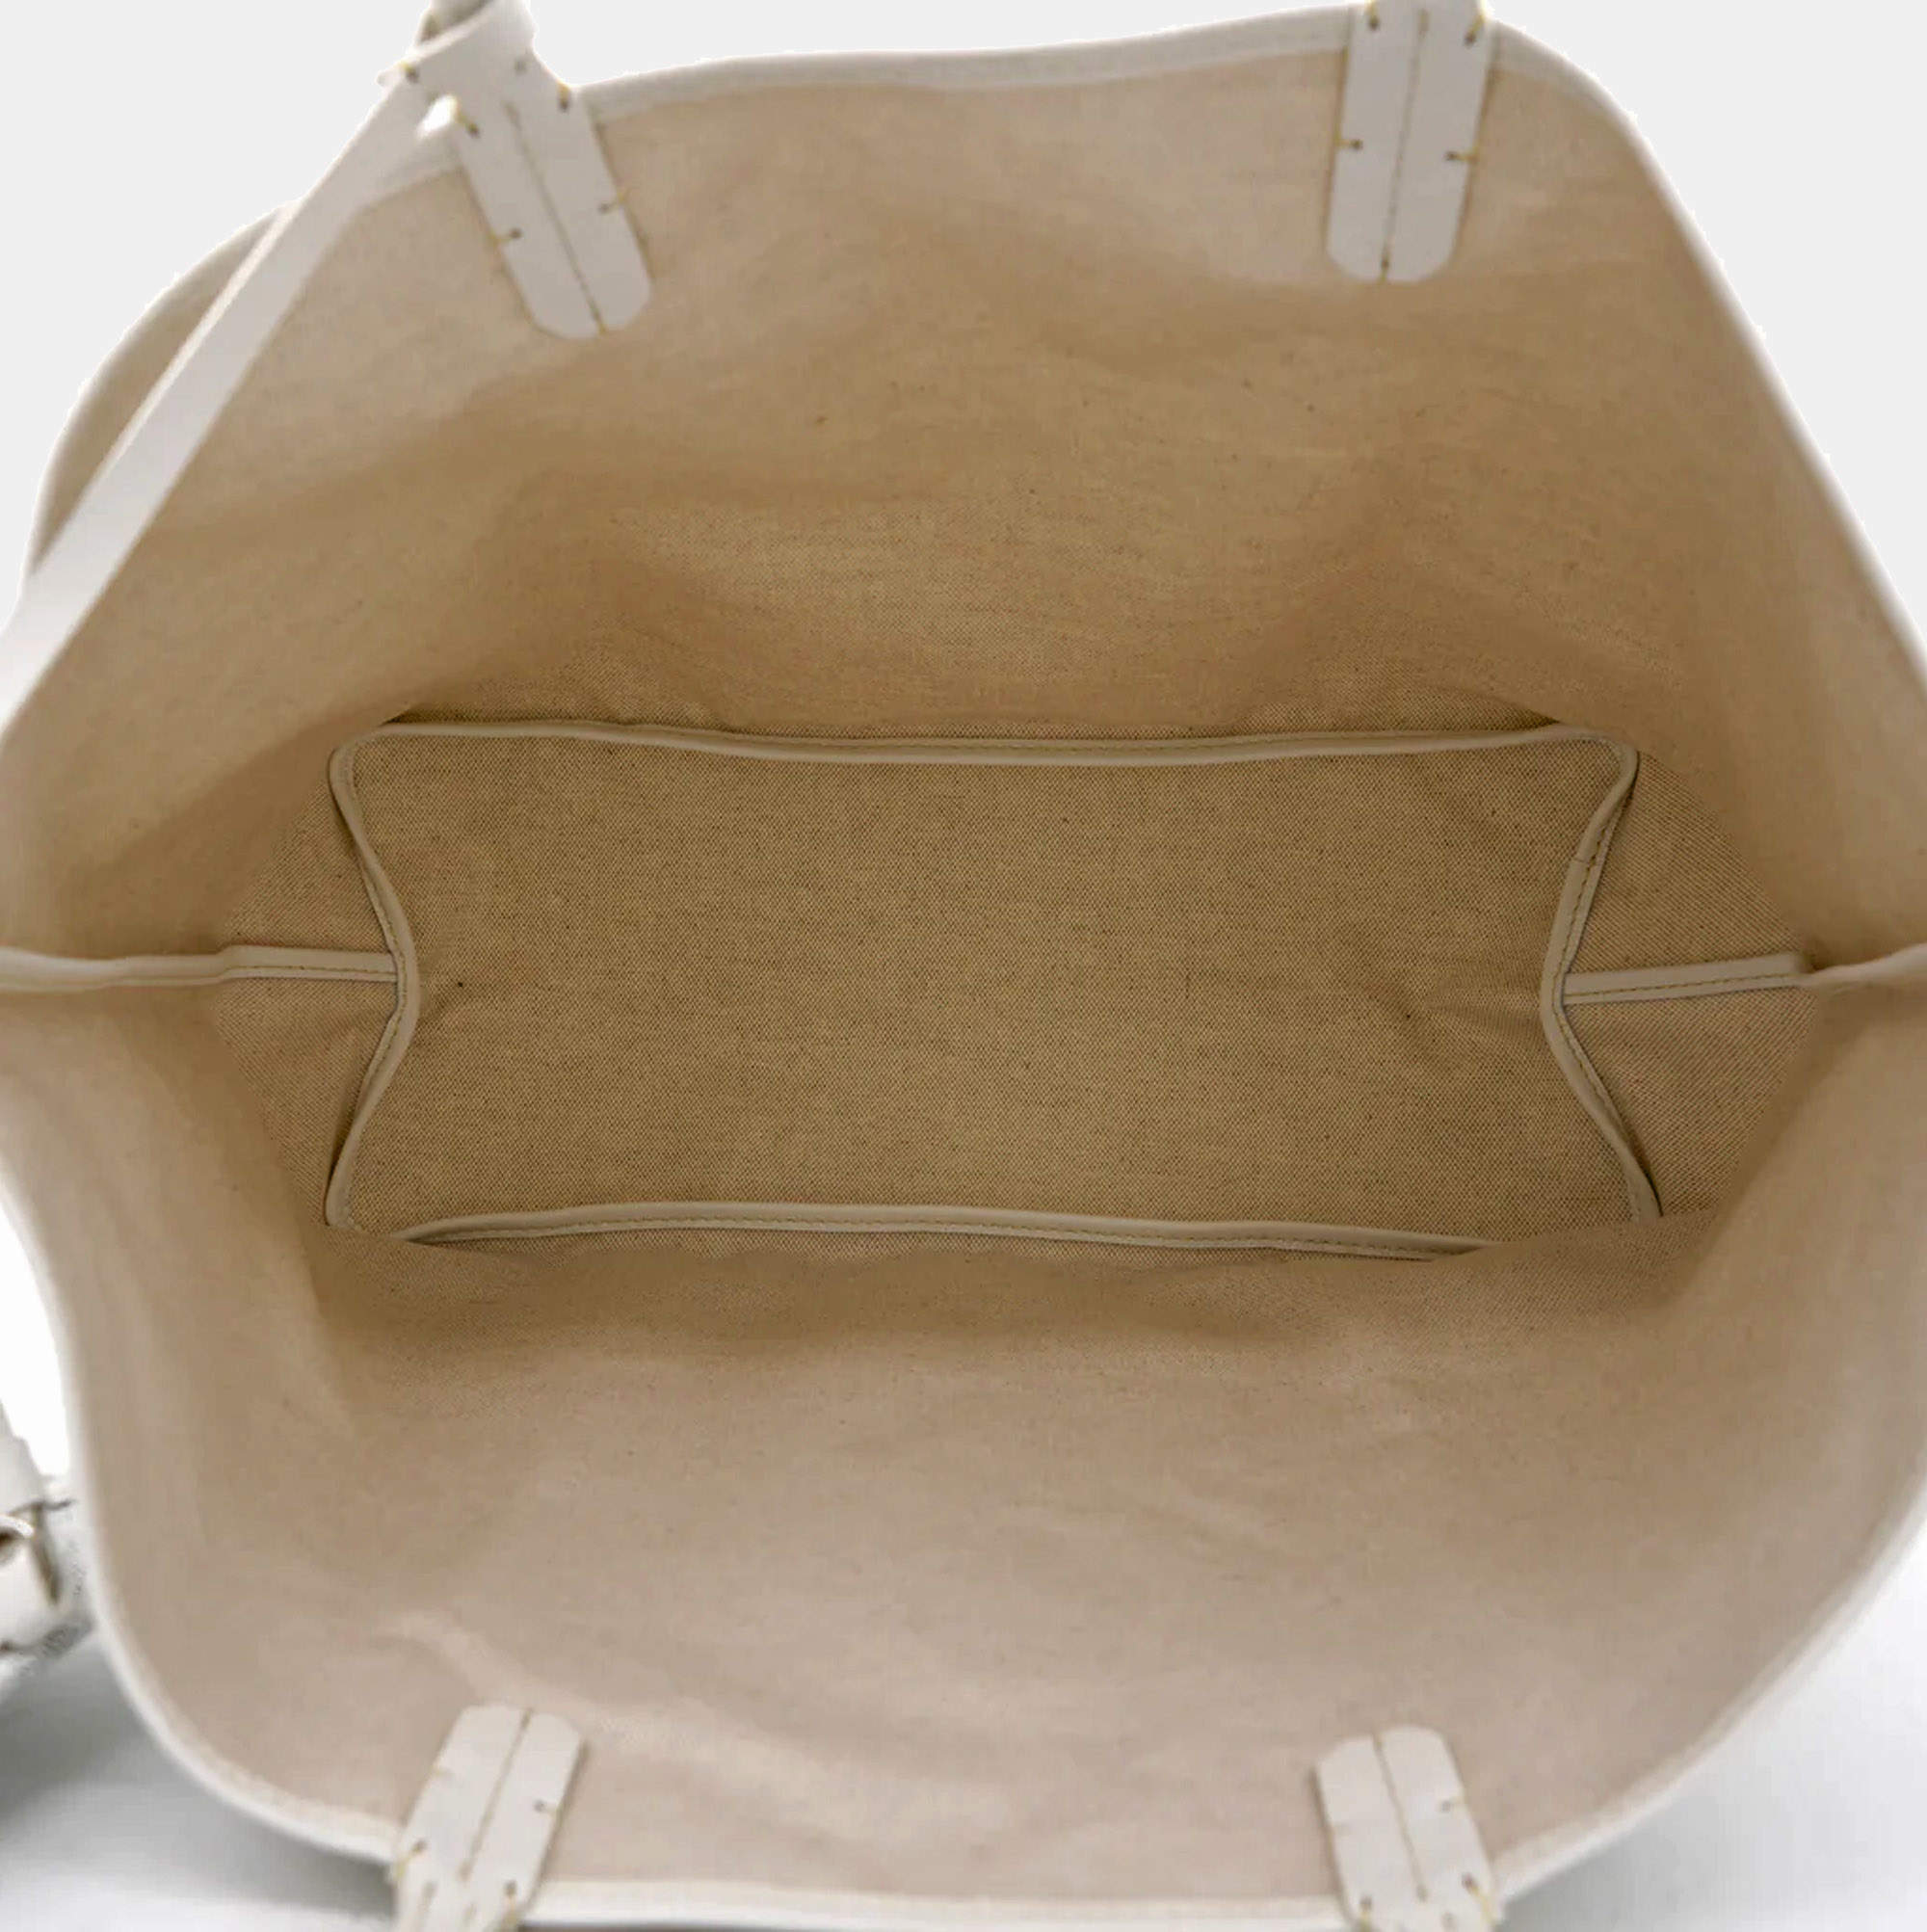 Goyard Saint Louis Shoulder Bag in White Canvas – Fancy Lux